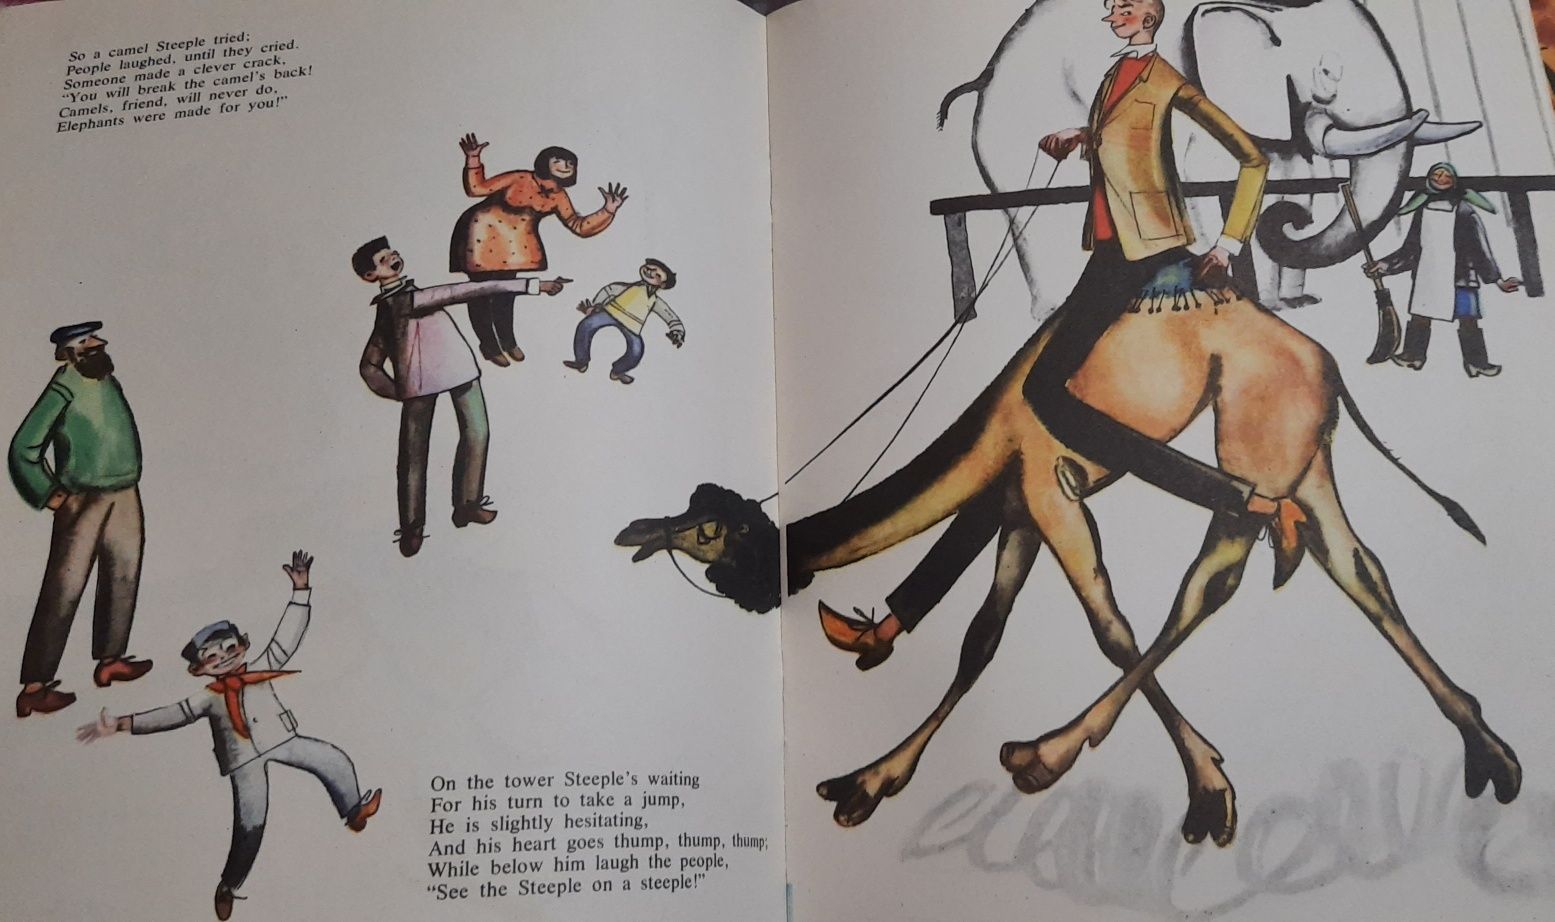 Радянська  дитяча книга англійською Uncle Steeple 1974